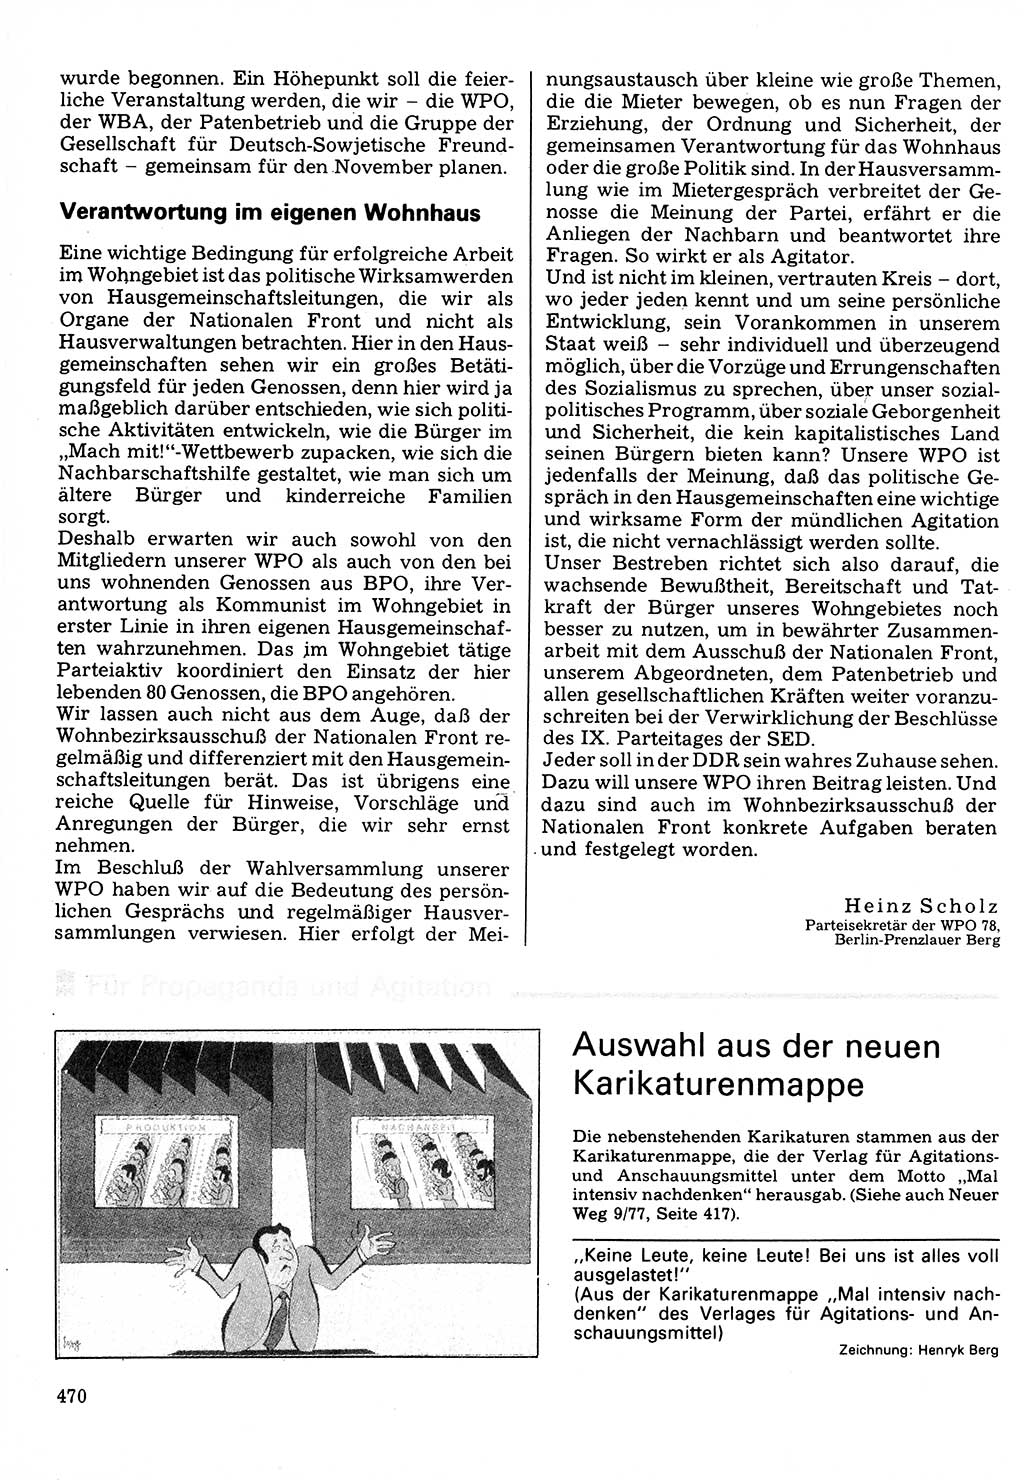 Neuer Weg (NW), Organ des Zentralkomitees (ZK) der SED (Sozialistische Einheitspartei Deutschlands) für Fragen des Parteilebens, 32. Jahrgang [Deutsche Demokratische Republik (DDR)] 1977, Seite 470 (NW ZK SED DDR 1977, S. 470)